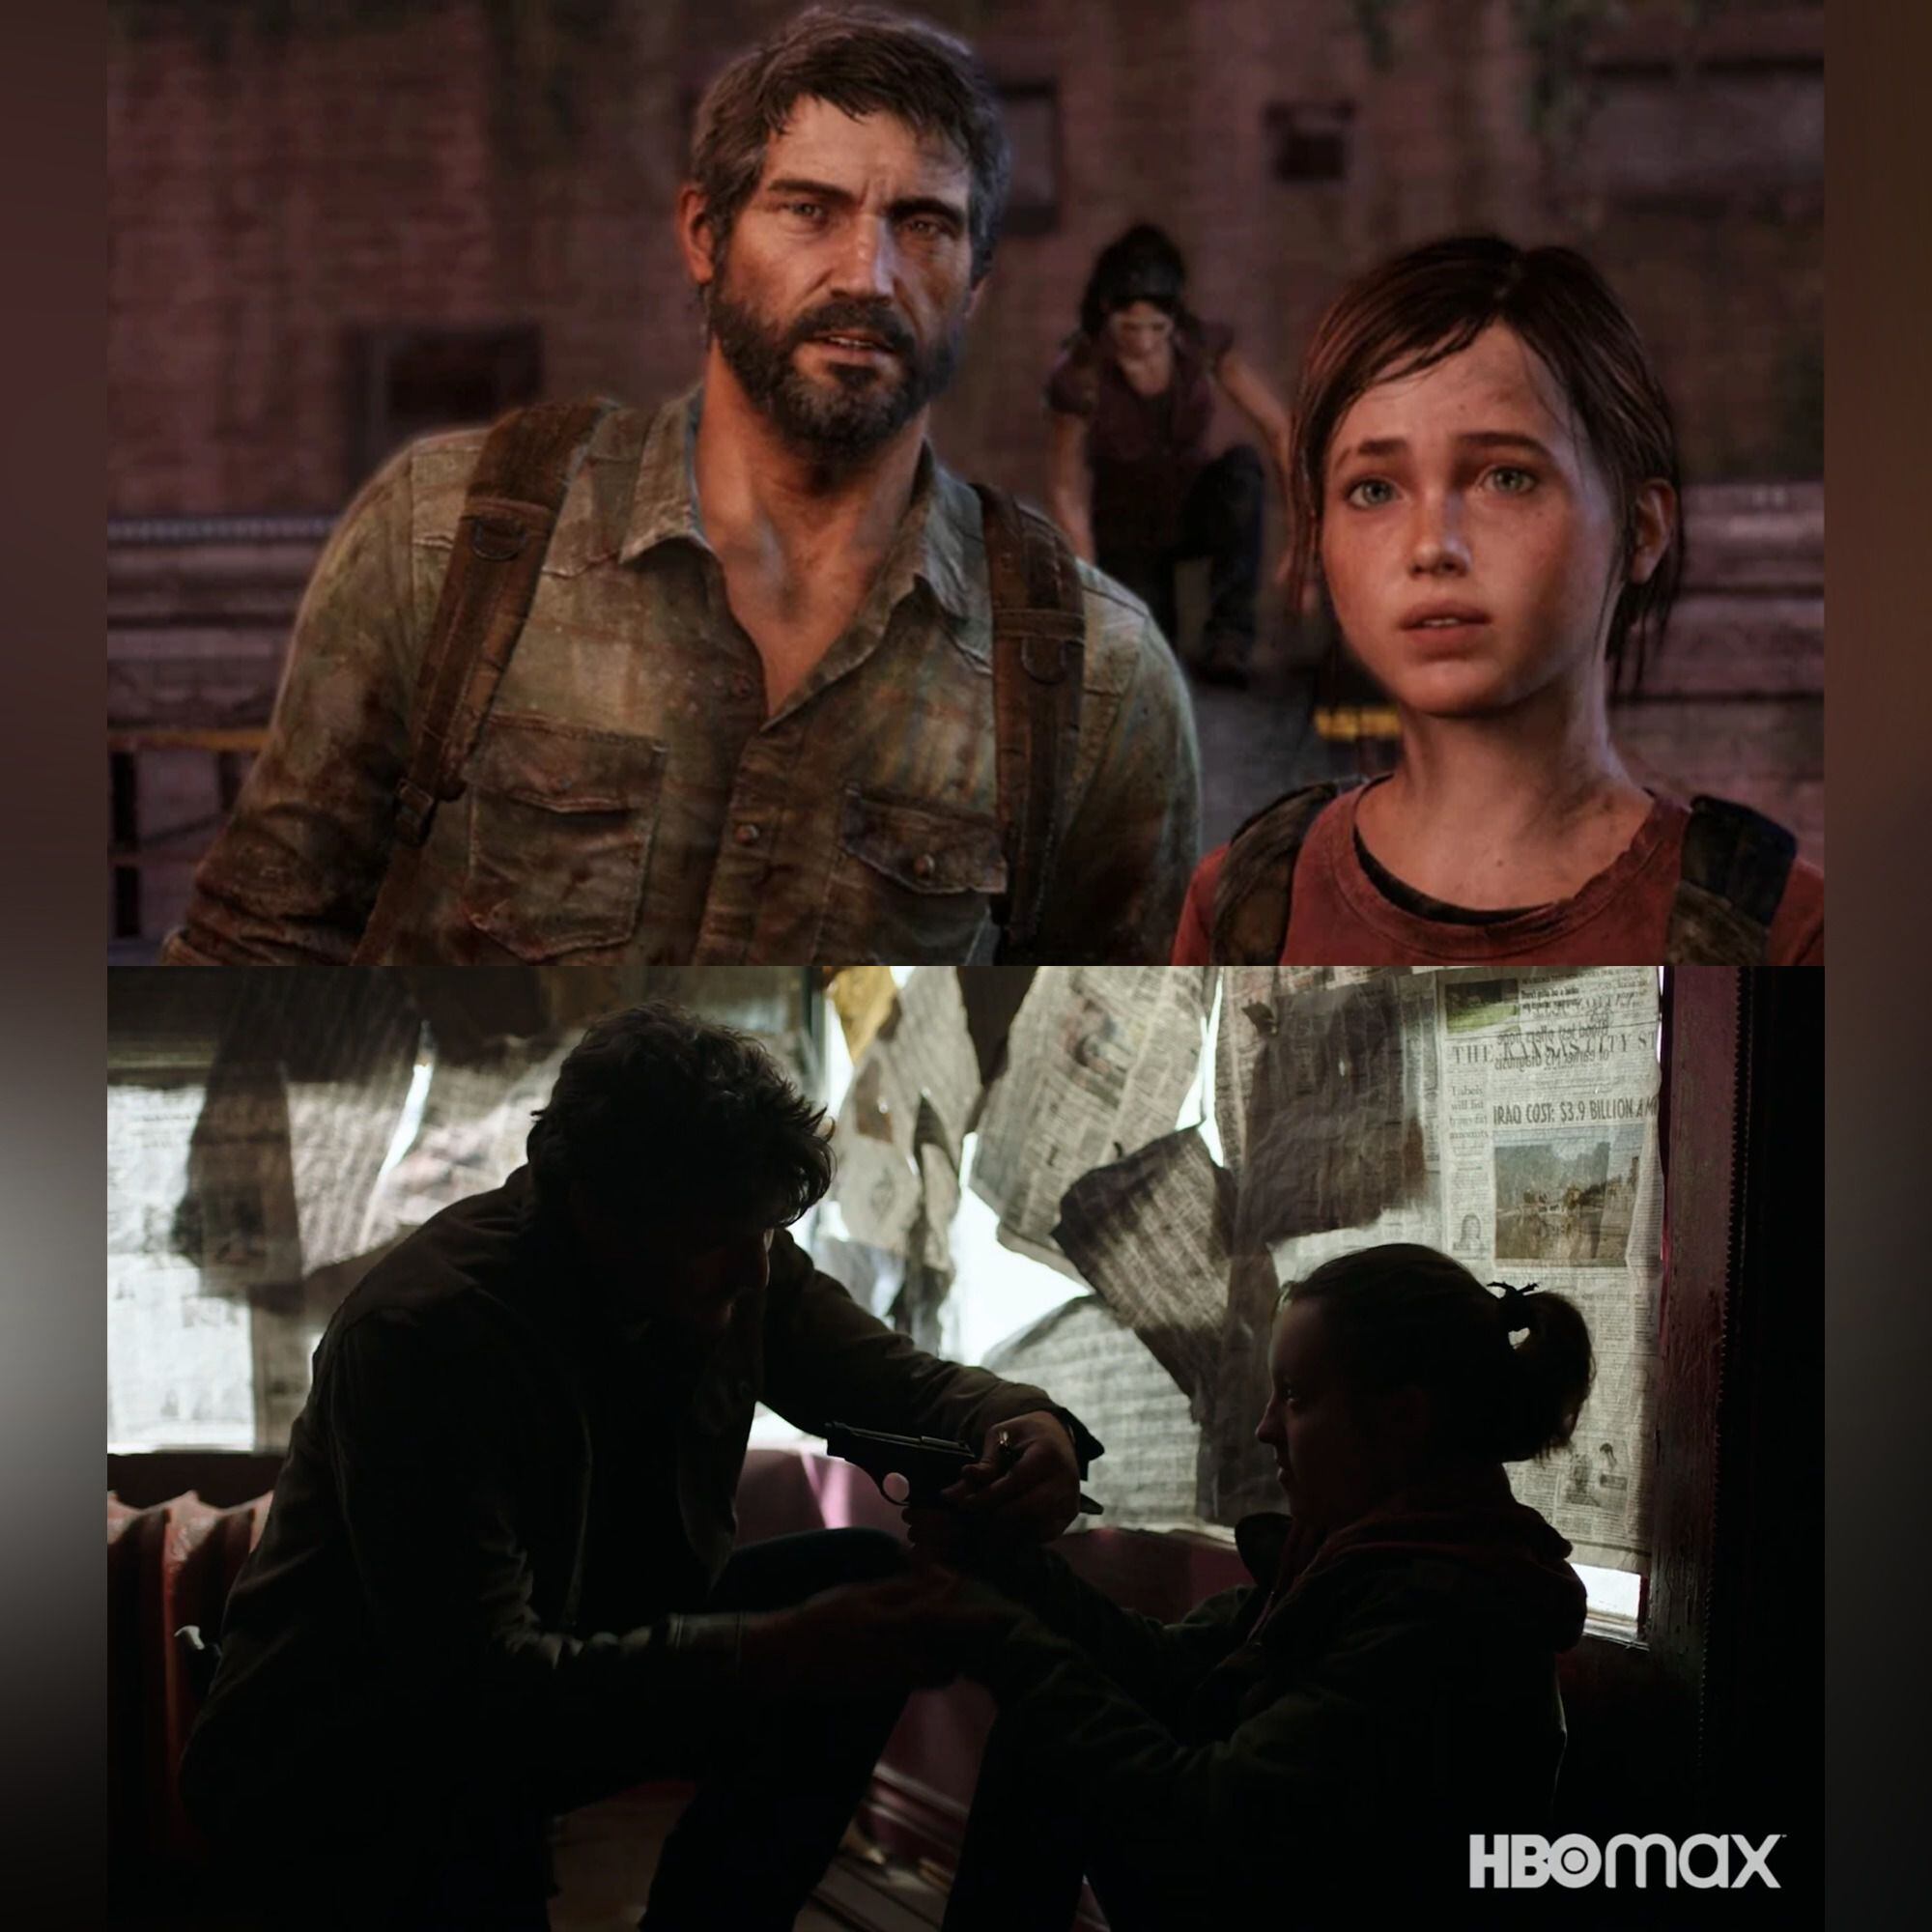 Comparativa de fotogramas entre el videojuego y la producción para televisión. Foto: HBO